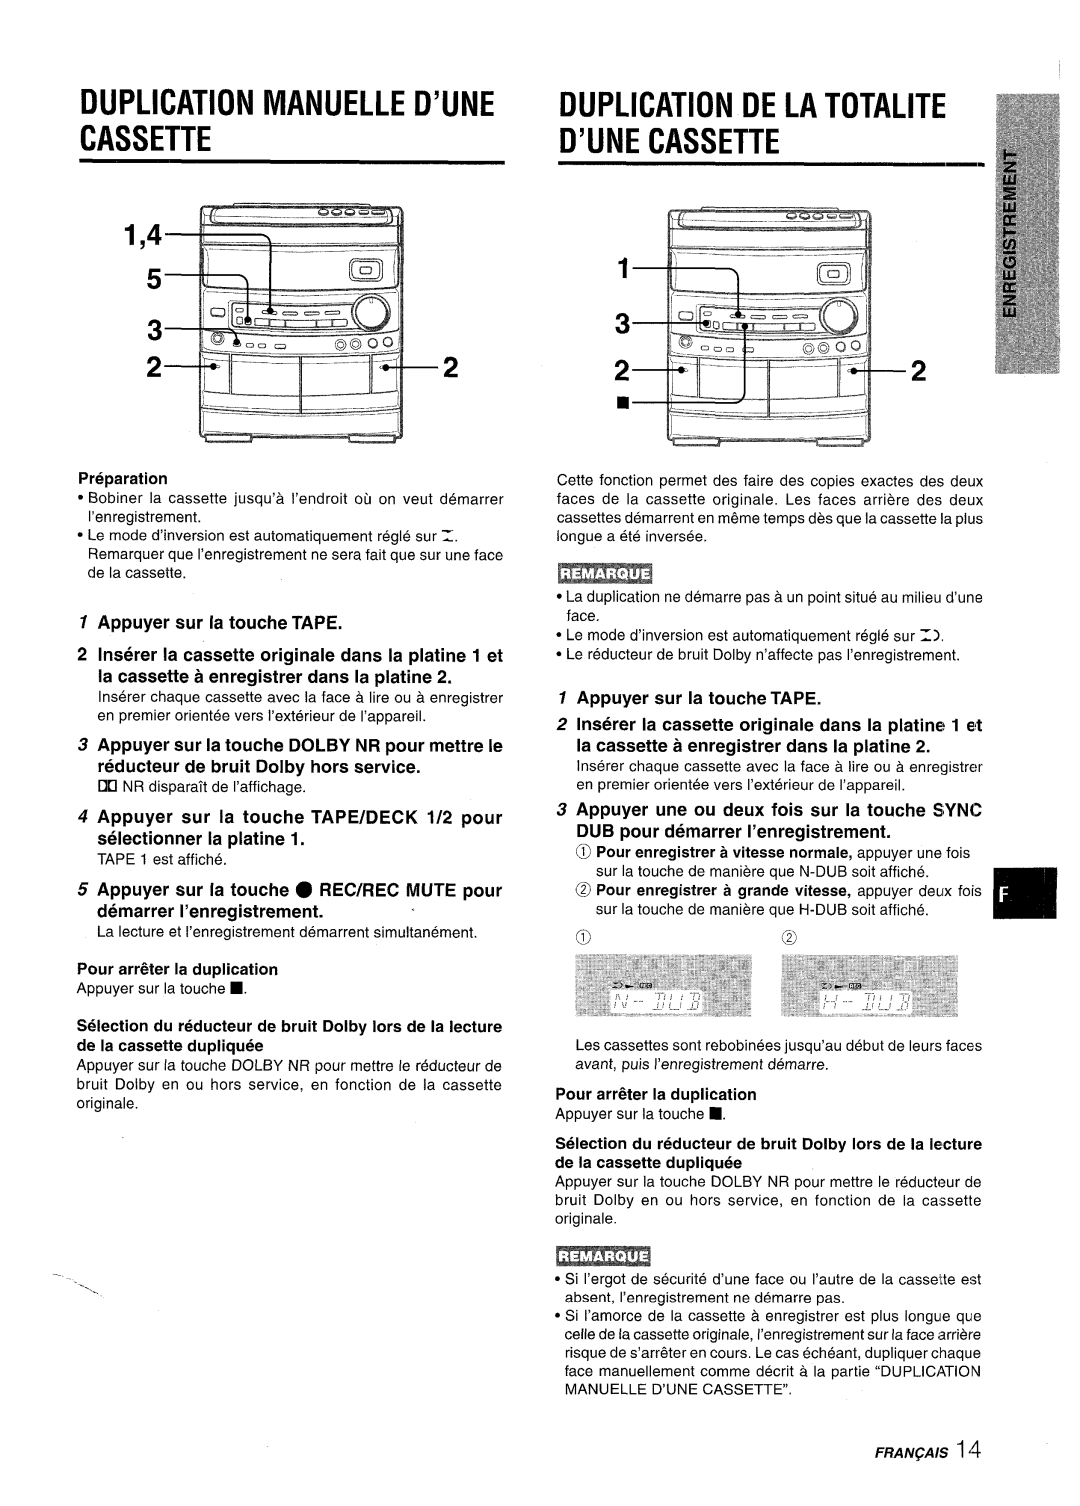 Aiwa NSX-AV800 Duplication Manuelle D’Une Cassette, Duplication De La Totalite D’Une Cassette, Appuyer sur la touche TAPE 